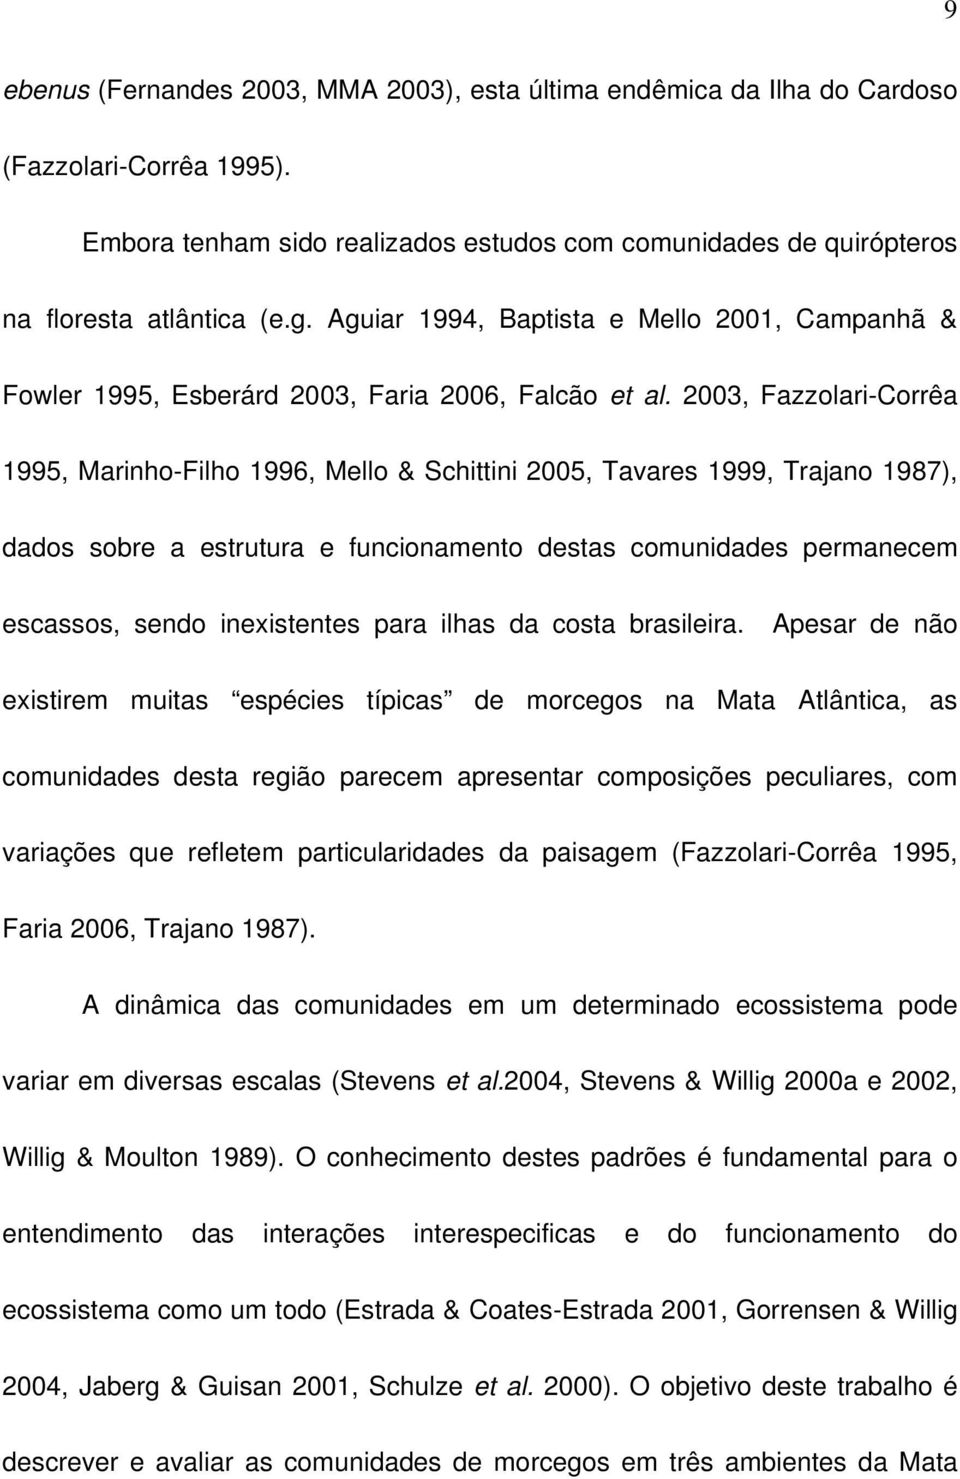 2003, Fazzolari-Corrêa 1995, Marinho-Filho 1996, Mello & Schittini 2005, Tavares 1999, Trajano 1987), dados sobre a estrutura e funcionamento destas comunidades permanecem escassos, sendo